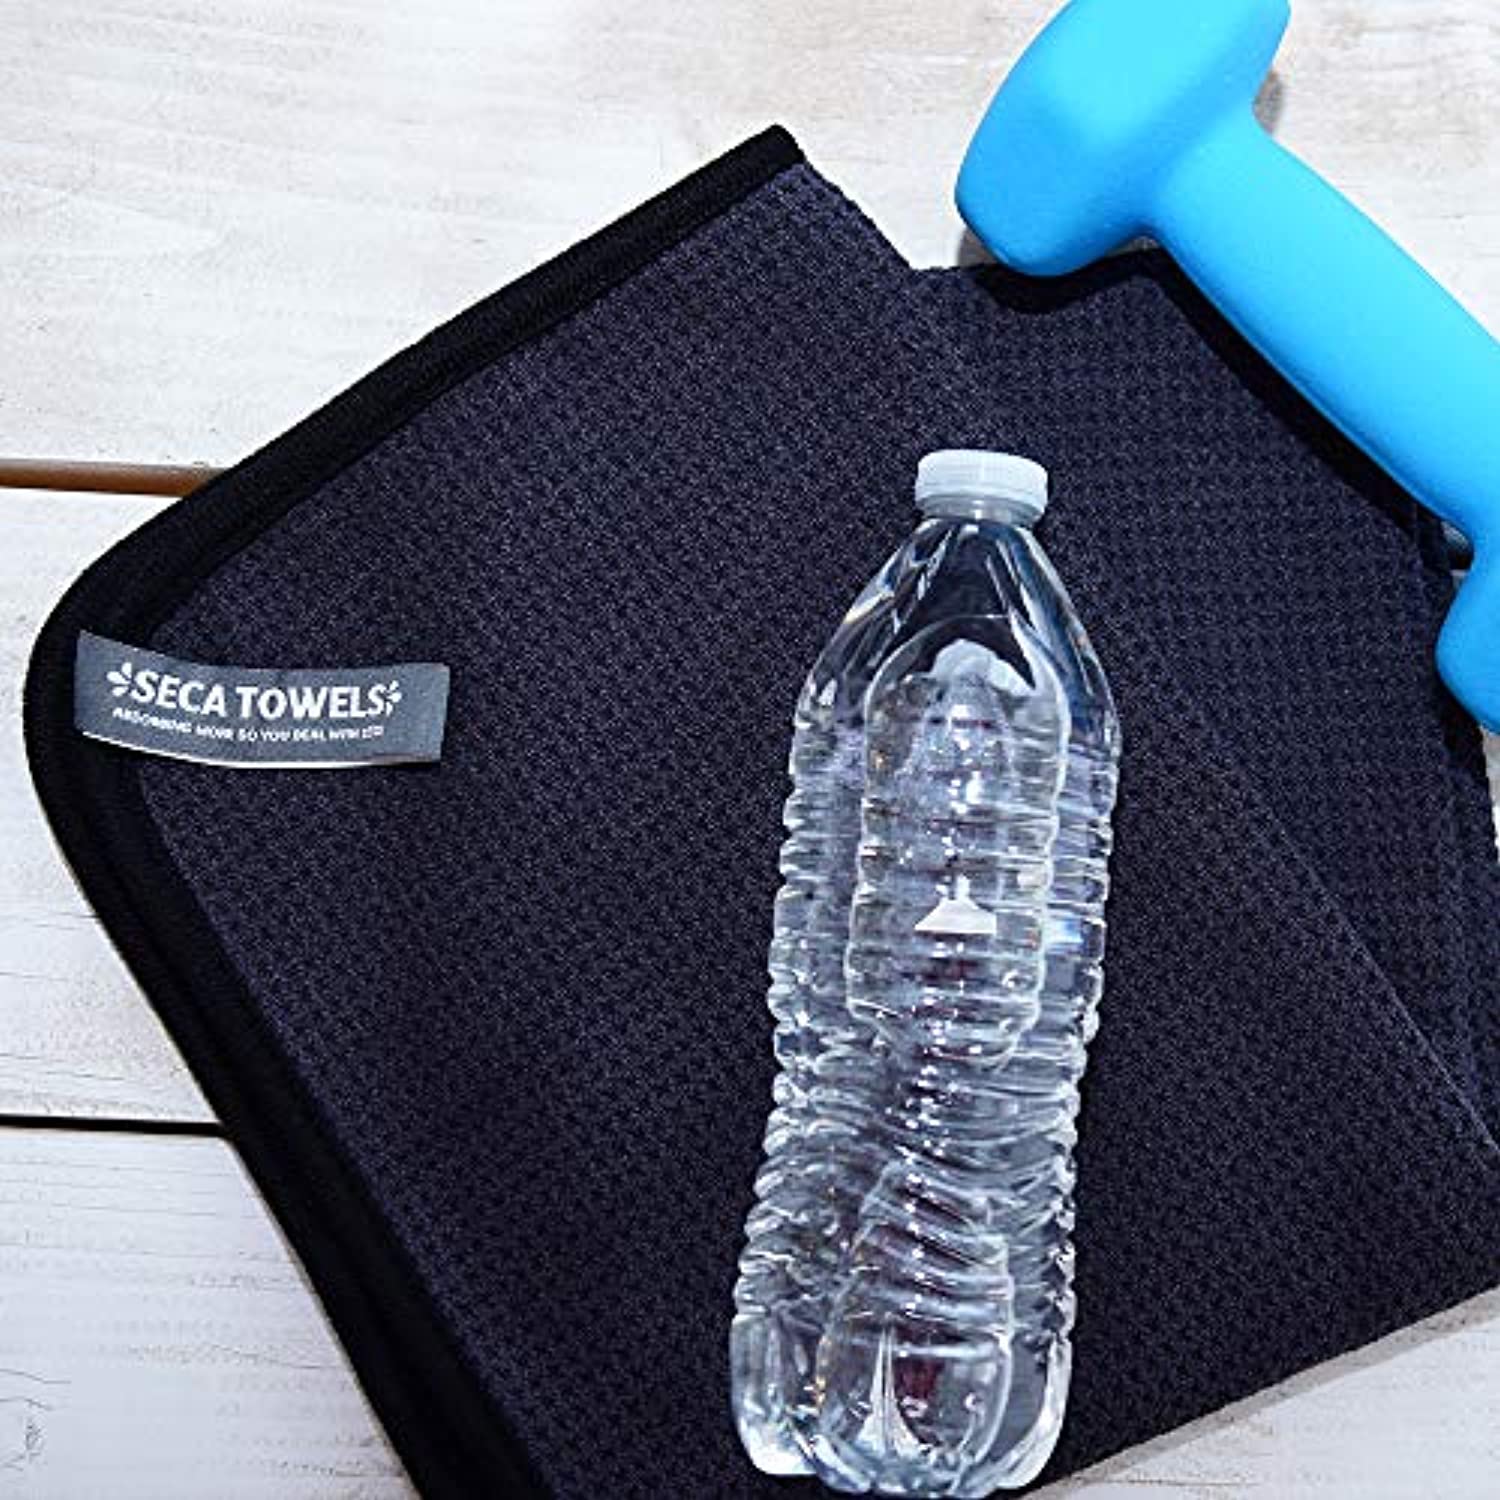 Toallas de gimnasio para el sudor (paquete de 2) – Toallas de entrenamiento  con textura de gofre absorbente para gimnasio, deportes y ejercicio –